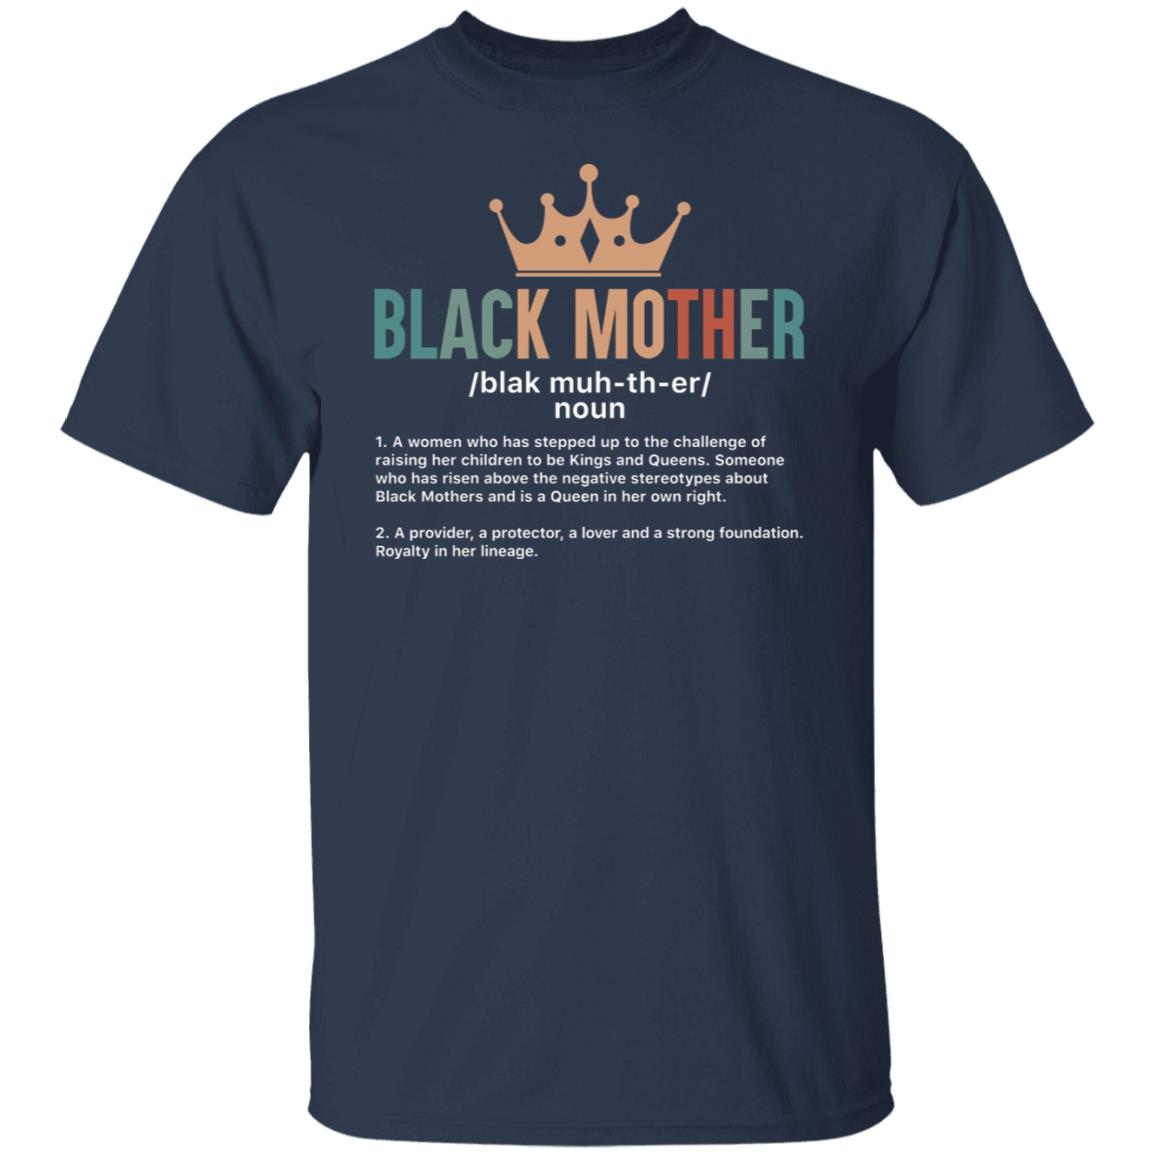 Black Mother T-shirt Apparel Gearment Unisex T-Shirt Navy S